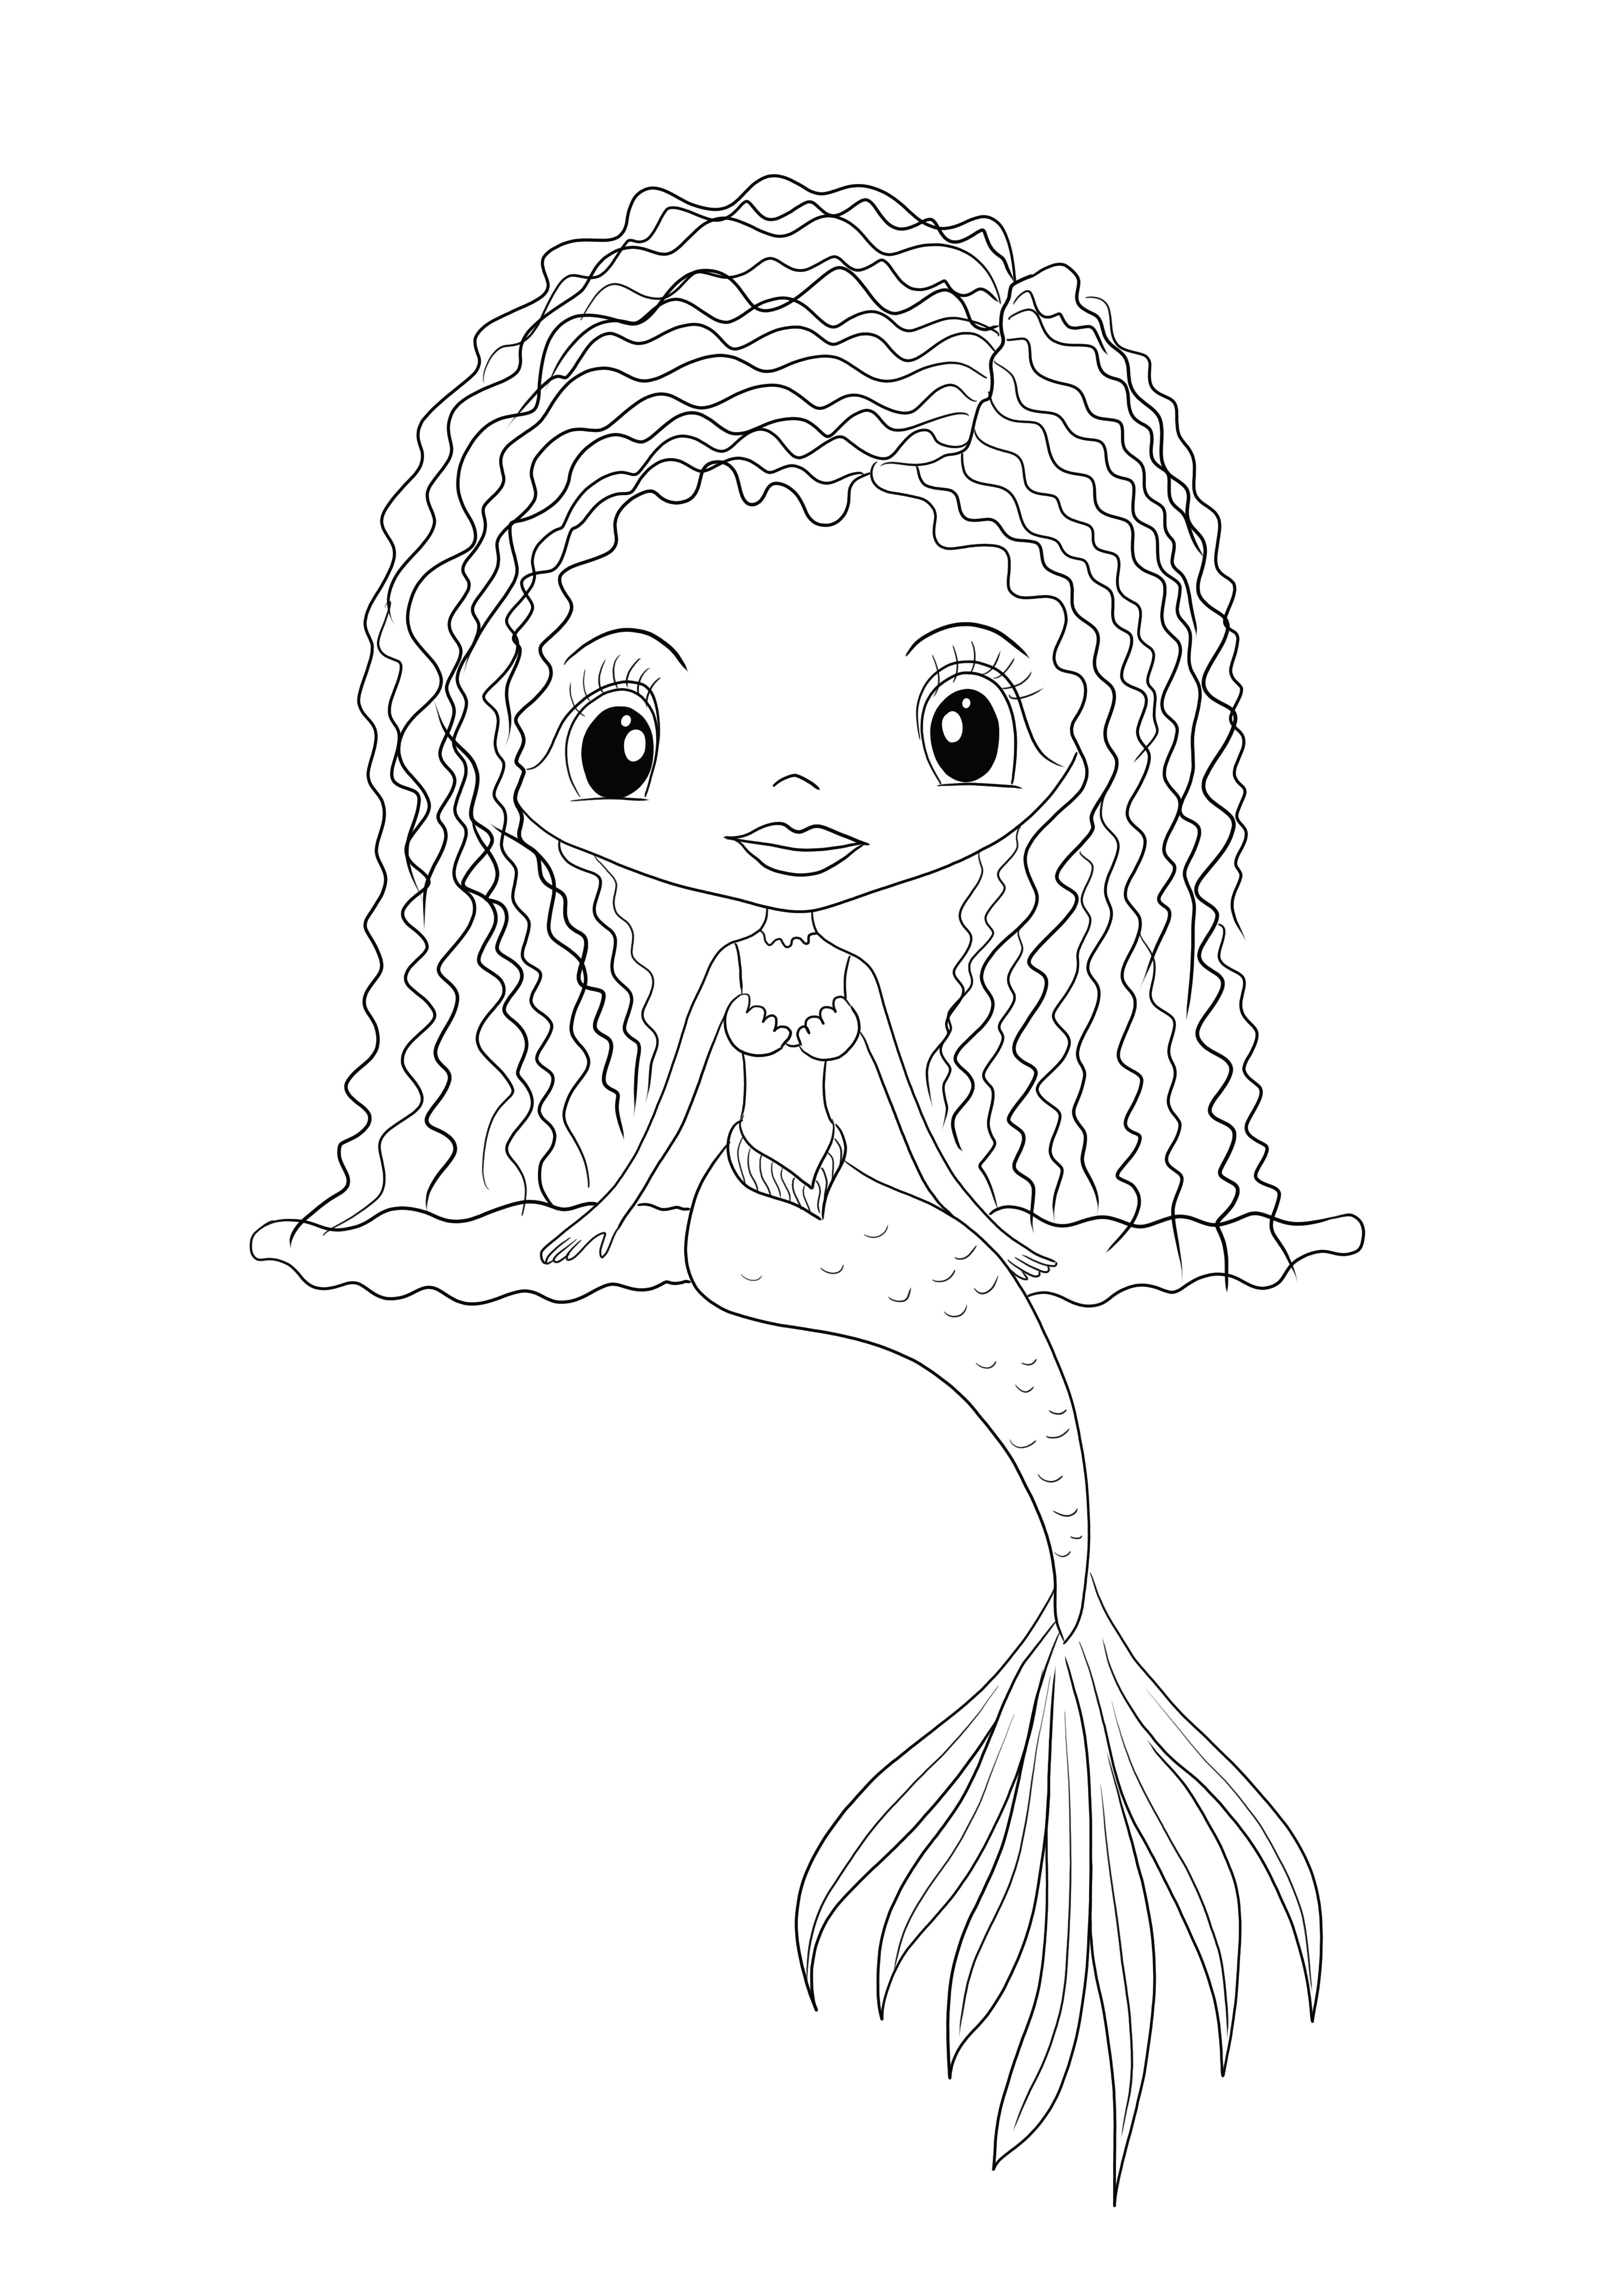 Gratis para imprimir una imagen para colorear Niña Sirena para niños de todas las edades